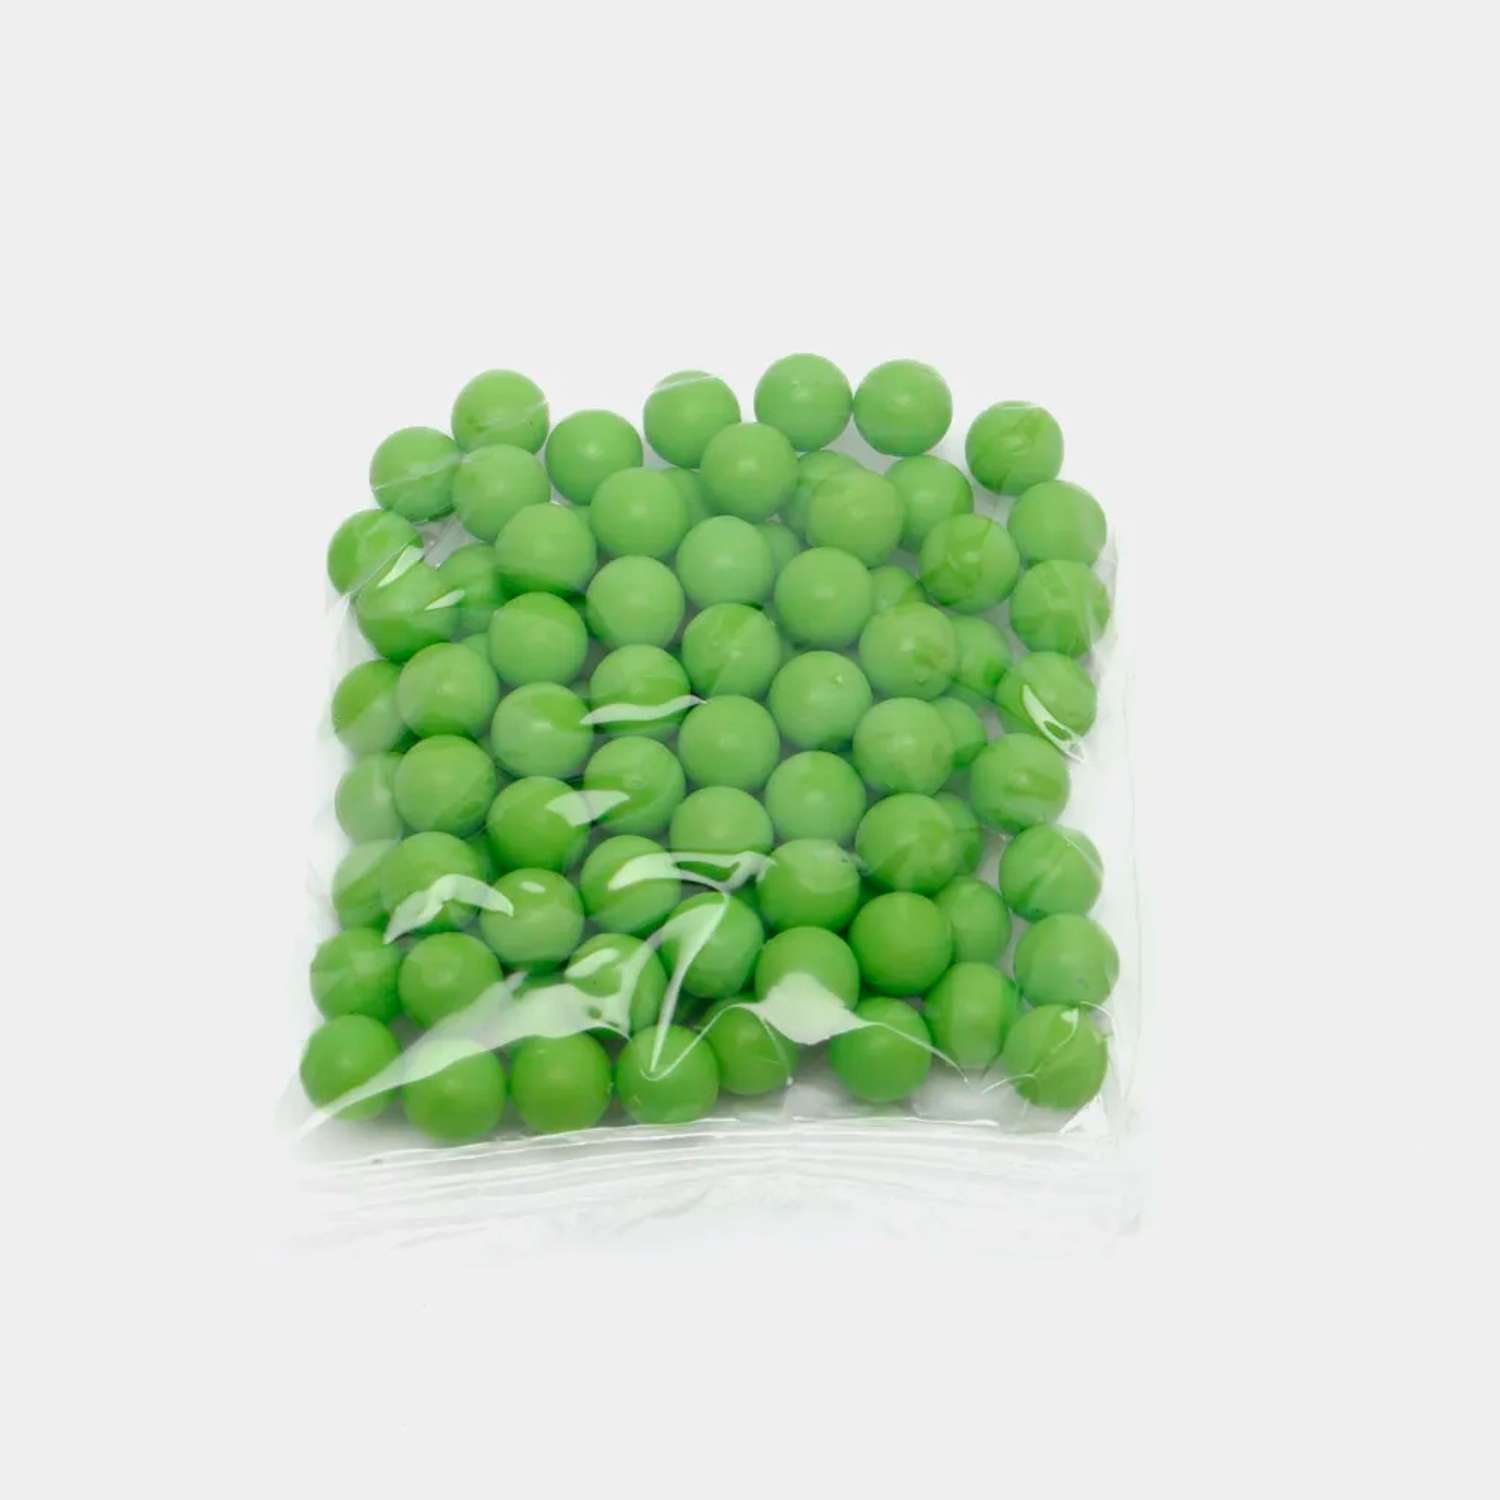 Пульки для игрушечного оружия Colorplast 6 мм 10000 шт зеленые - фото 2